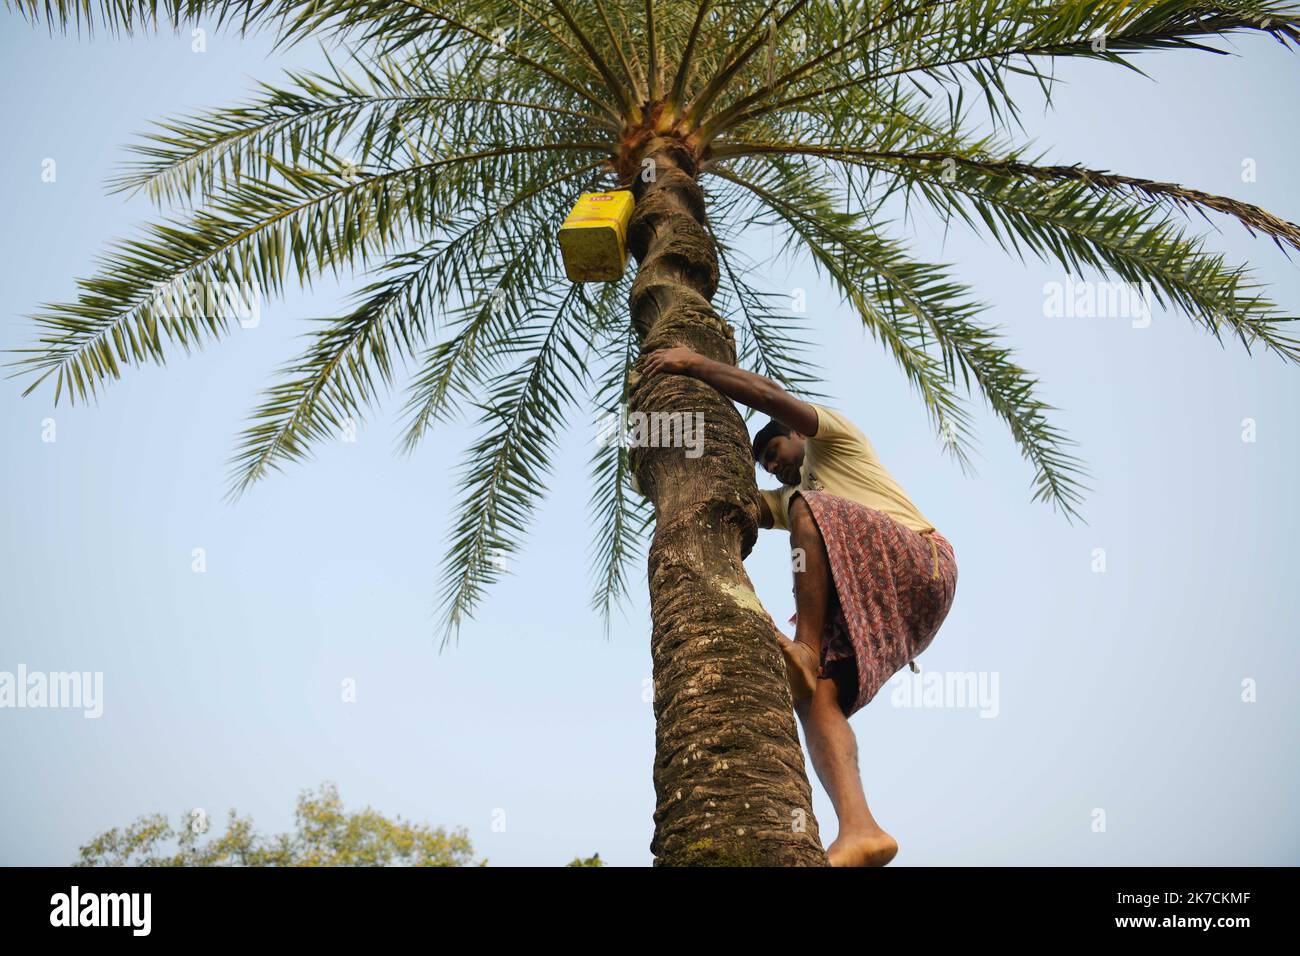 ©Abhisek Saha / Le Pictorium/MAXPPP - Abhisek Saha / Le Pictorium - 09/01/2021 - Inde / Tripura / Agartala - Un homme recueille la seve du palmier dans les villages de Mohanbhog, a 56 km d'Agartala. Ensuite la famille de collecteurs de seve de palmier fabriquent du sucre non raffine a partir de la seve de palmier dans les villages de Mohanbhog, a 56 km d'Agartala. / 09/01/2021 - India / Tripura / Agartala - A man collects the sap from the palm tree in the villages of Mohanbhog, 56 km from Agartala. Then the family of palm sap collectors make unrefined sugar from the palm sap in the villages of Stock Photo